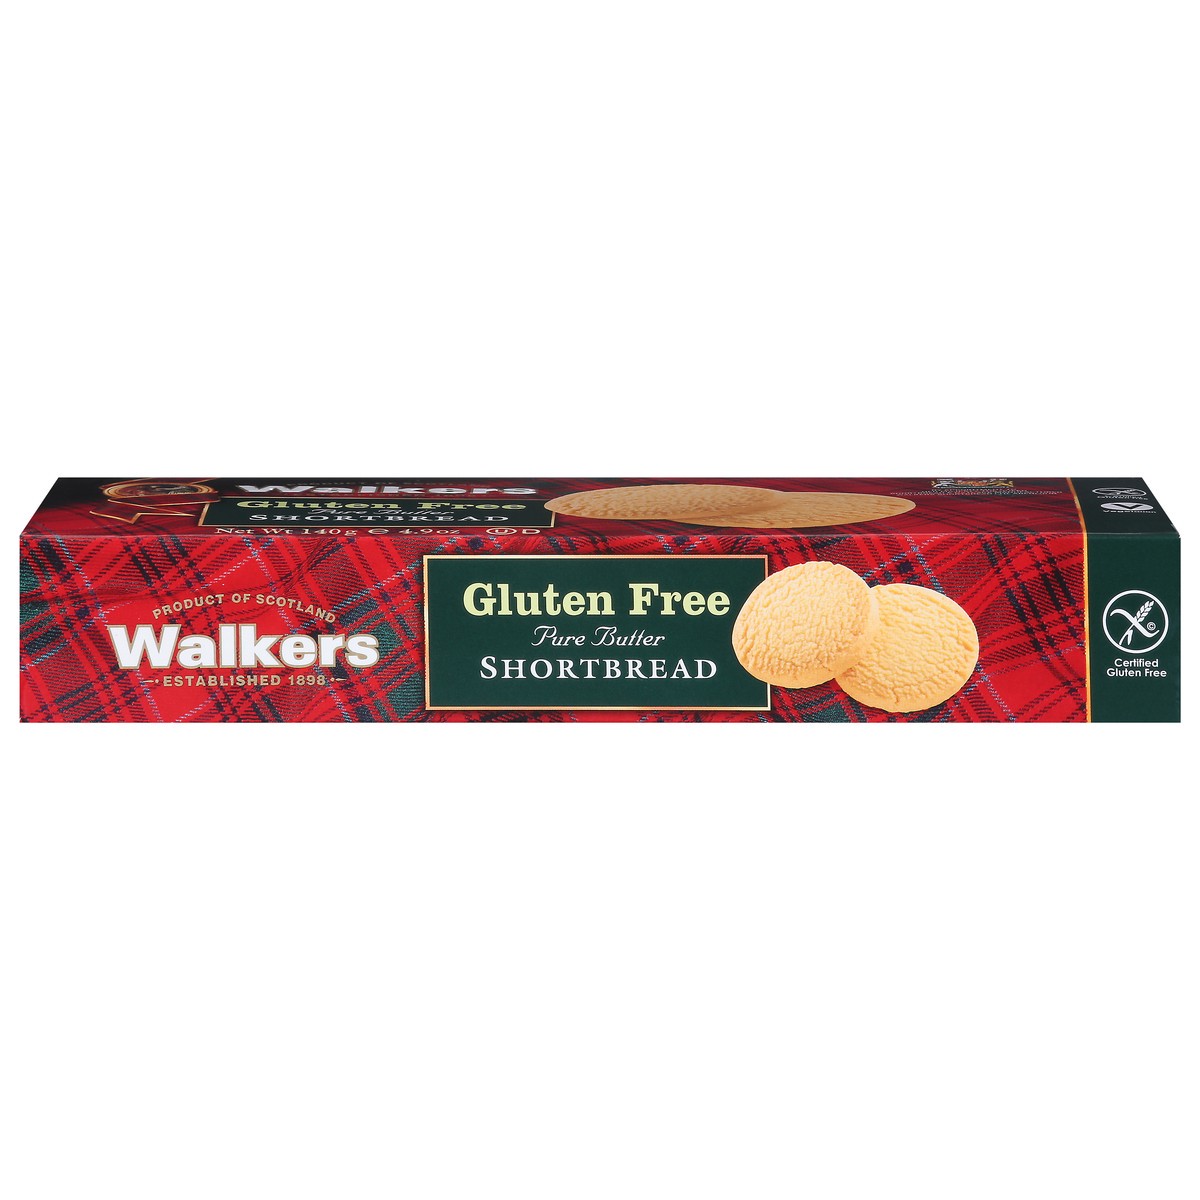 slide 1 of 1, Walker's Gluten Free Pure Butter Shortbread 4.9 oz, 4.9 oz